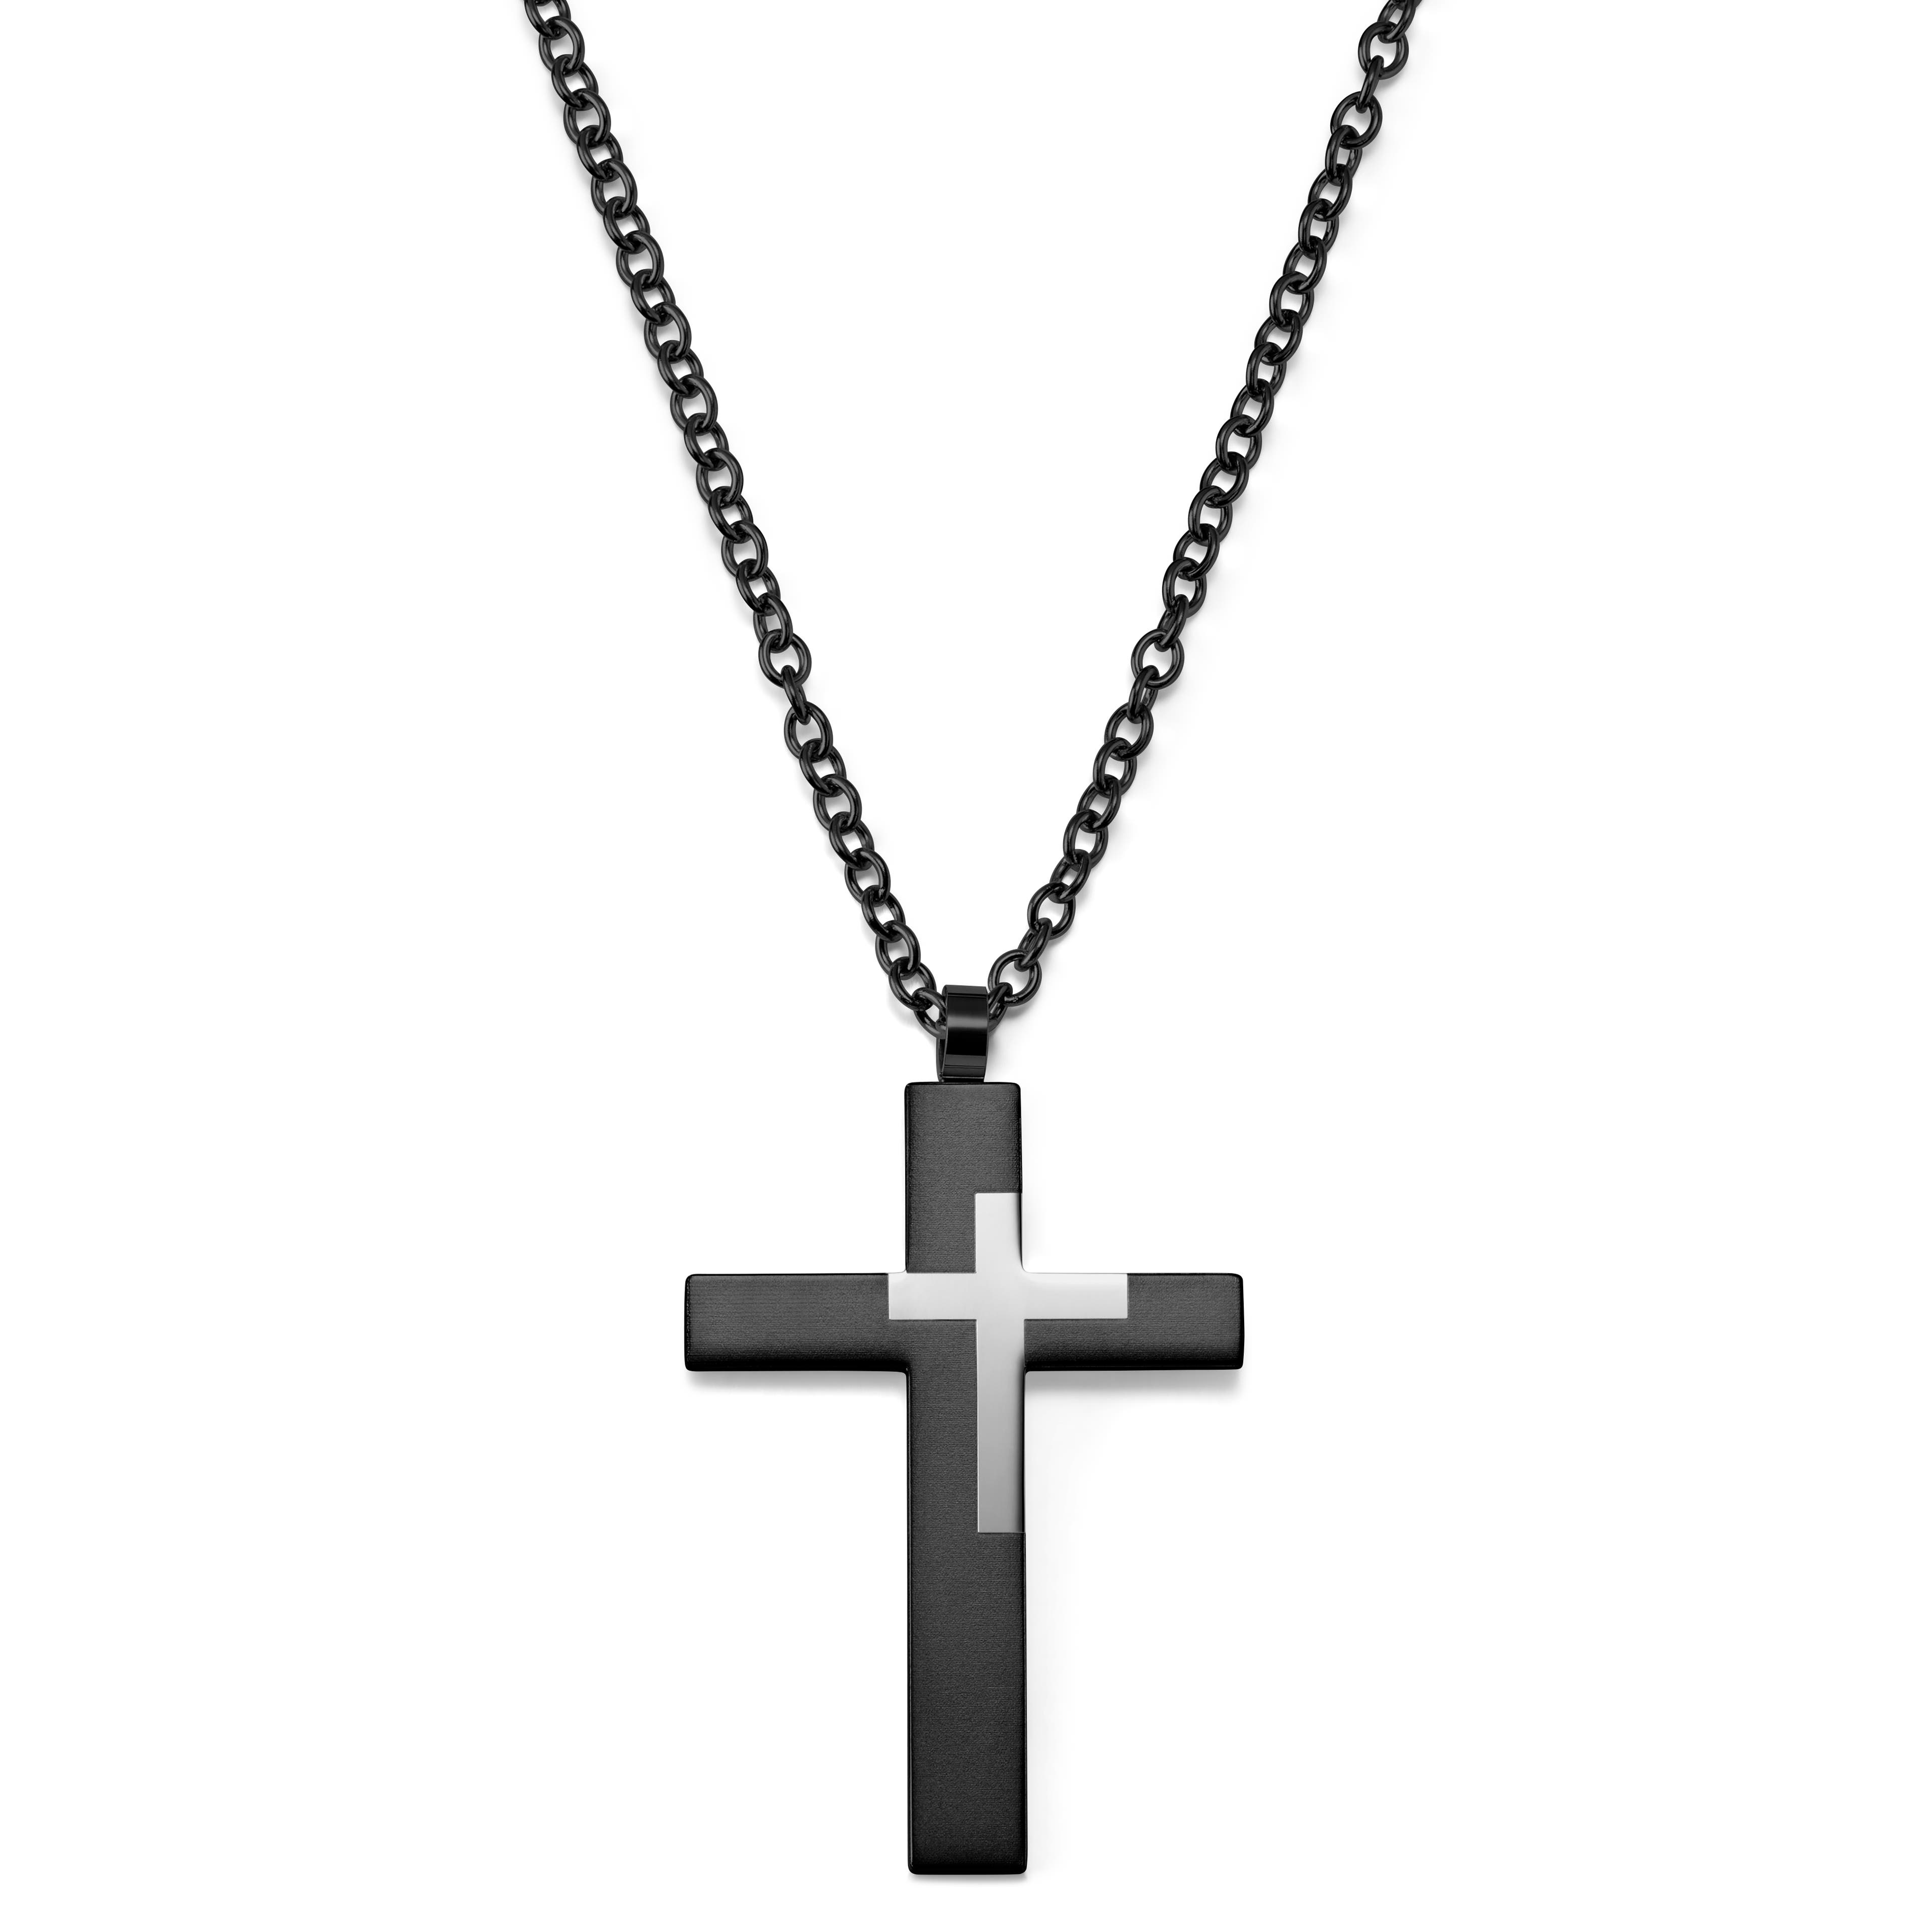 Ocelový náhrdelník s velkým křížkem v barvě gunmetal 